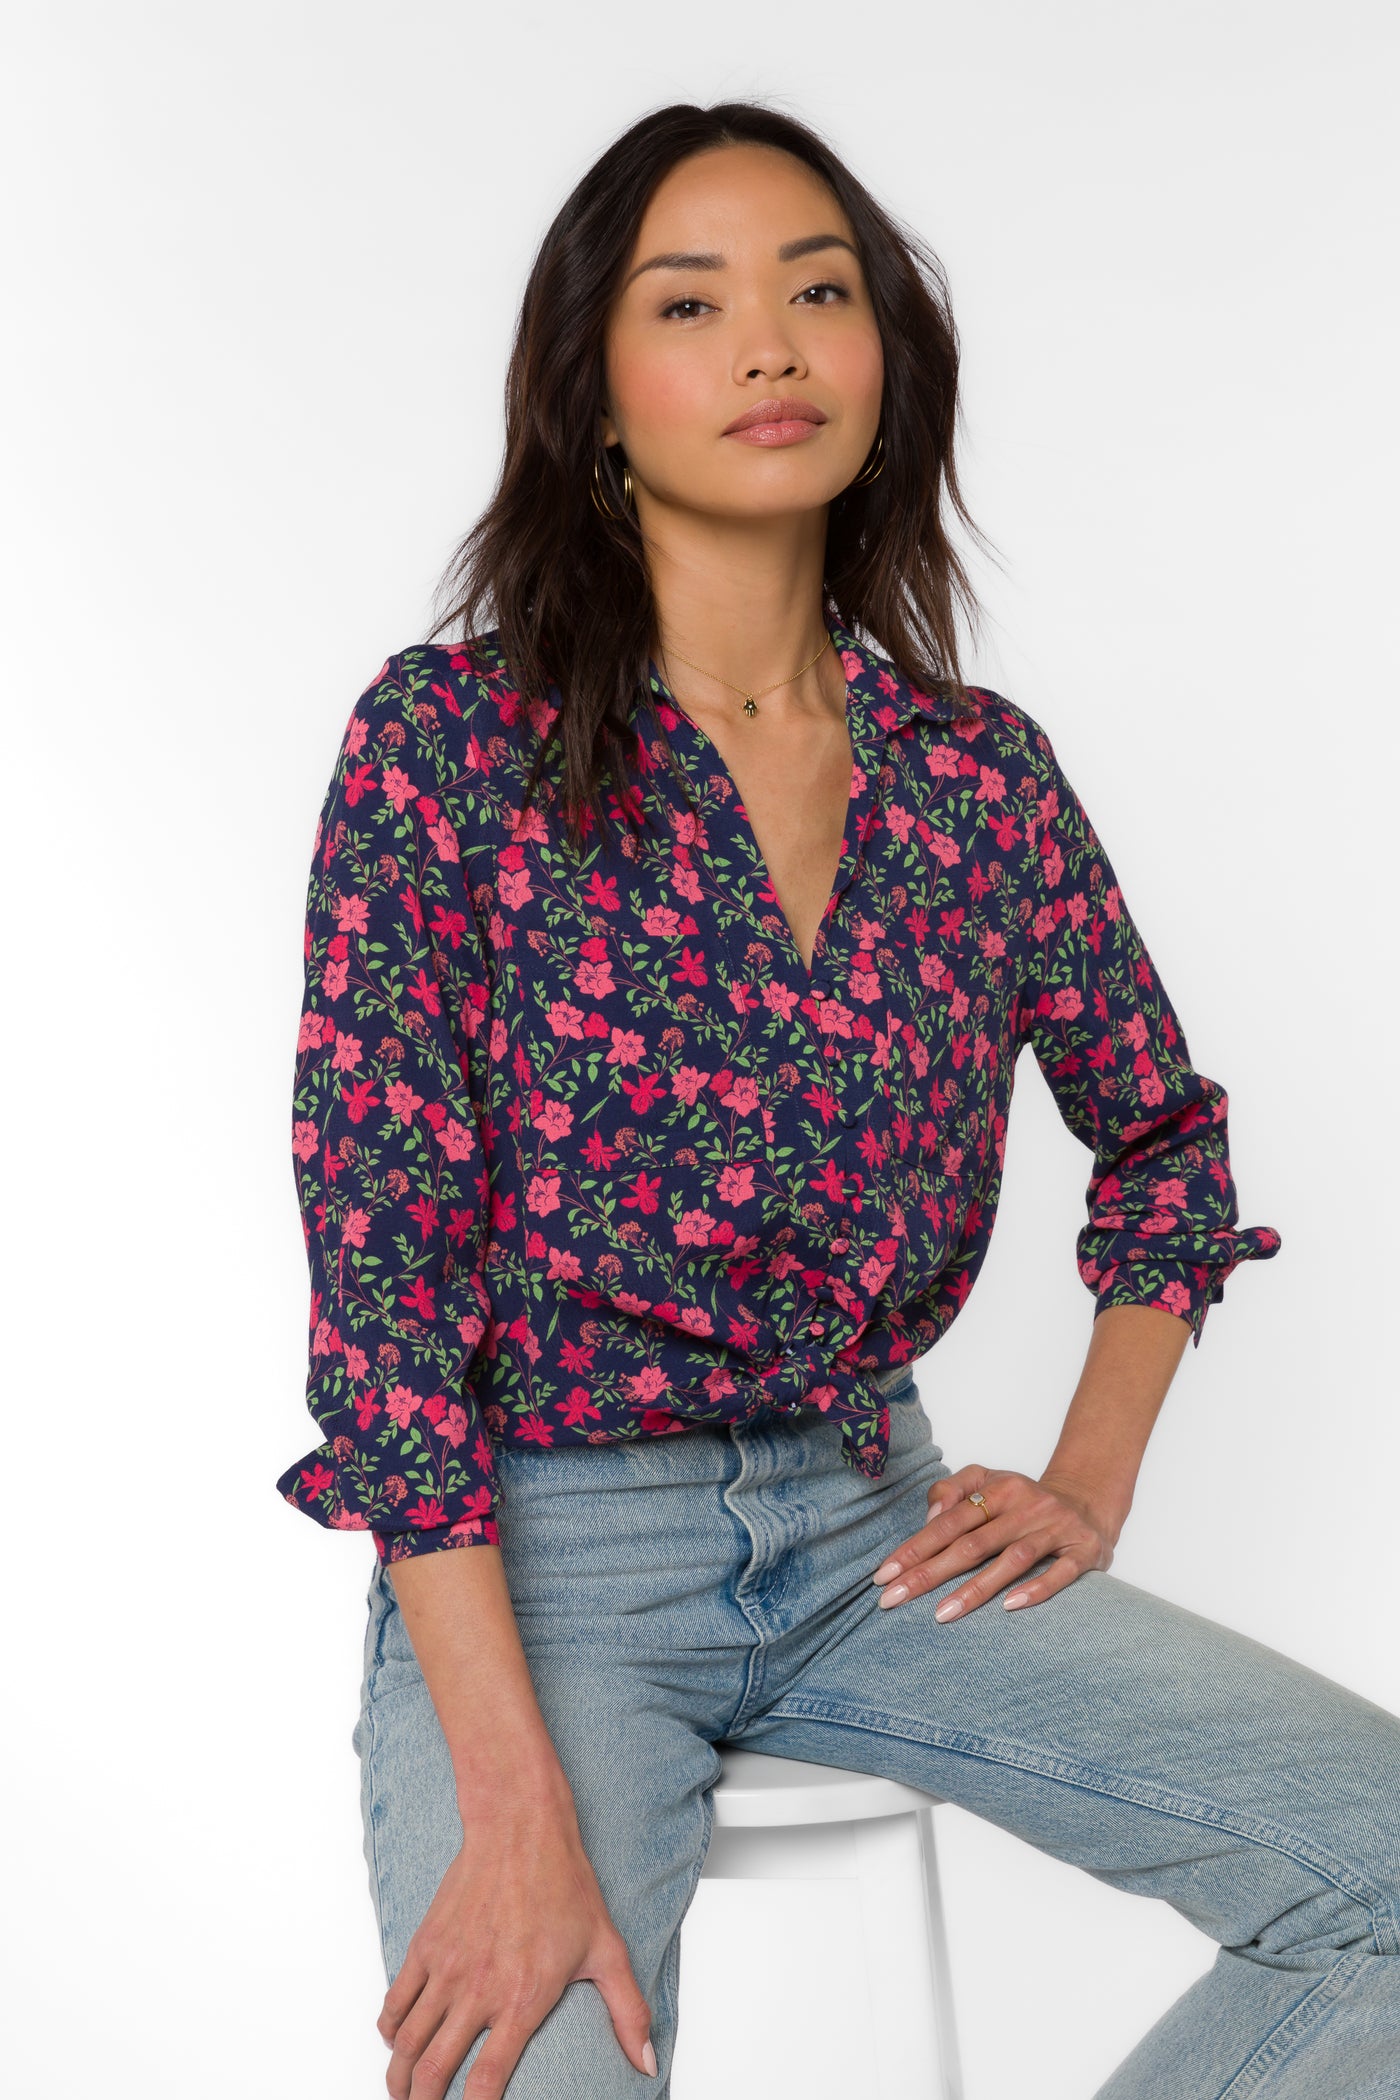 Eleni Ditsy Floral Shirt - Tops - Velvet Heart Clothing